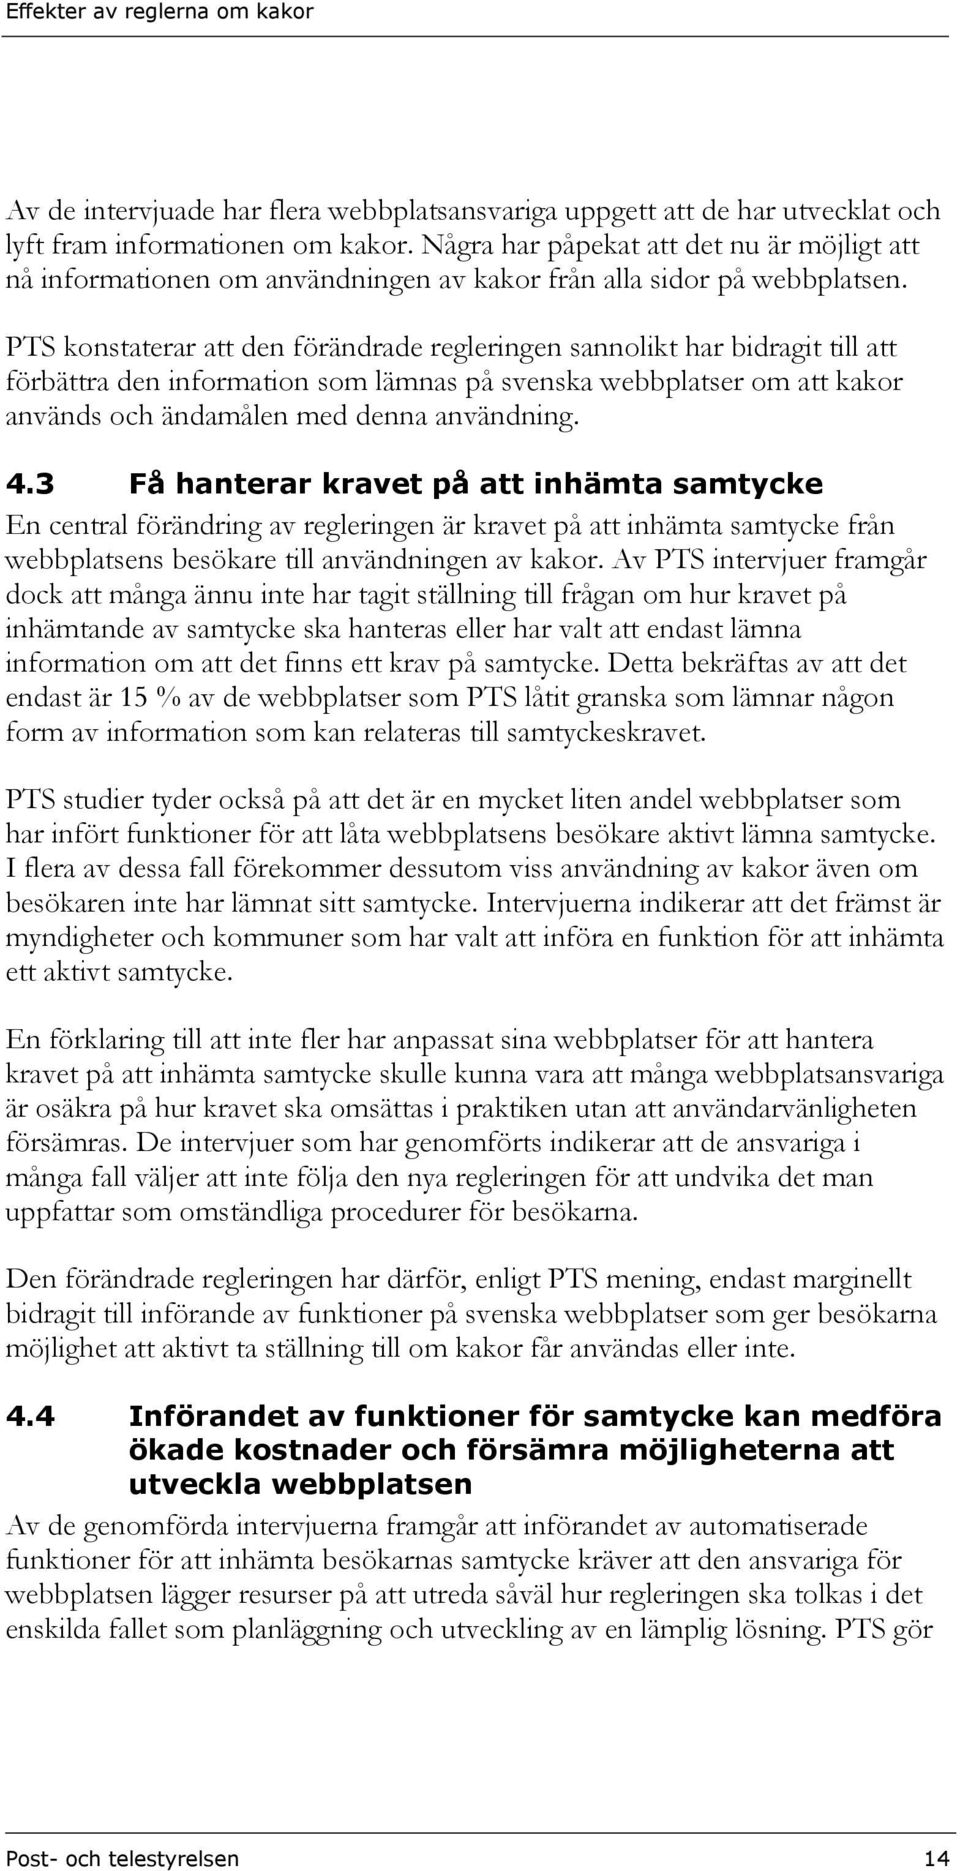 PTS konstaterar att den förändrade regleringen sannolikt har bidragit till att förbättra den information som lämnas på svenska webbplatser om att kakor används och ändamålen med denna användning. 4.